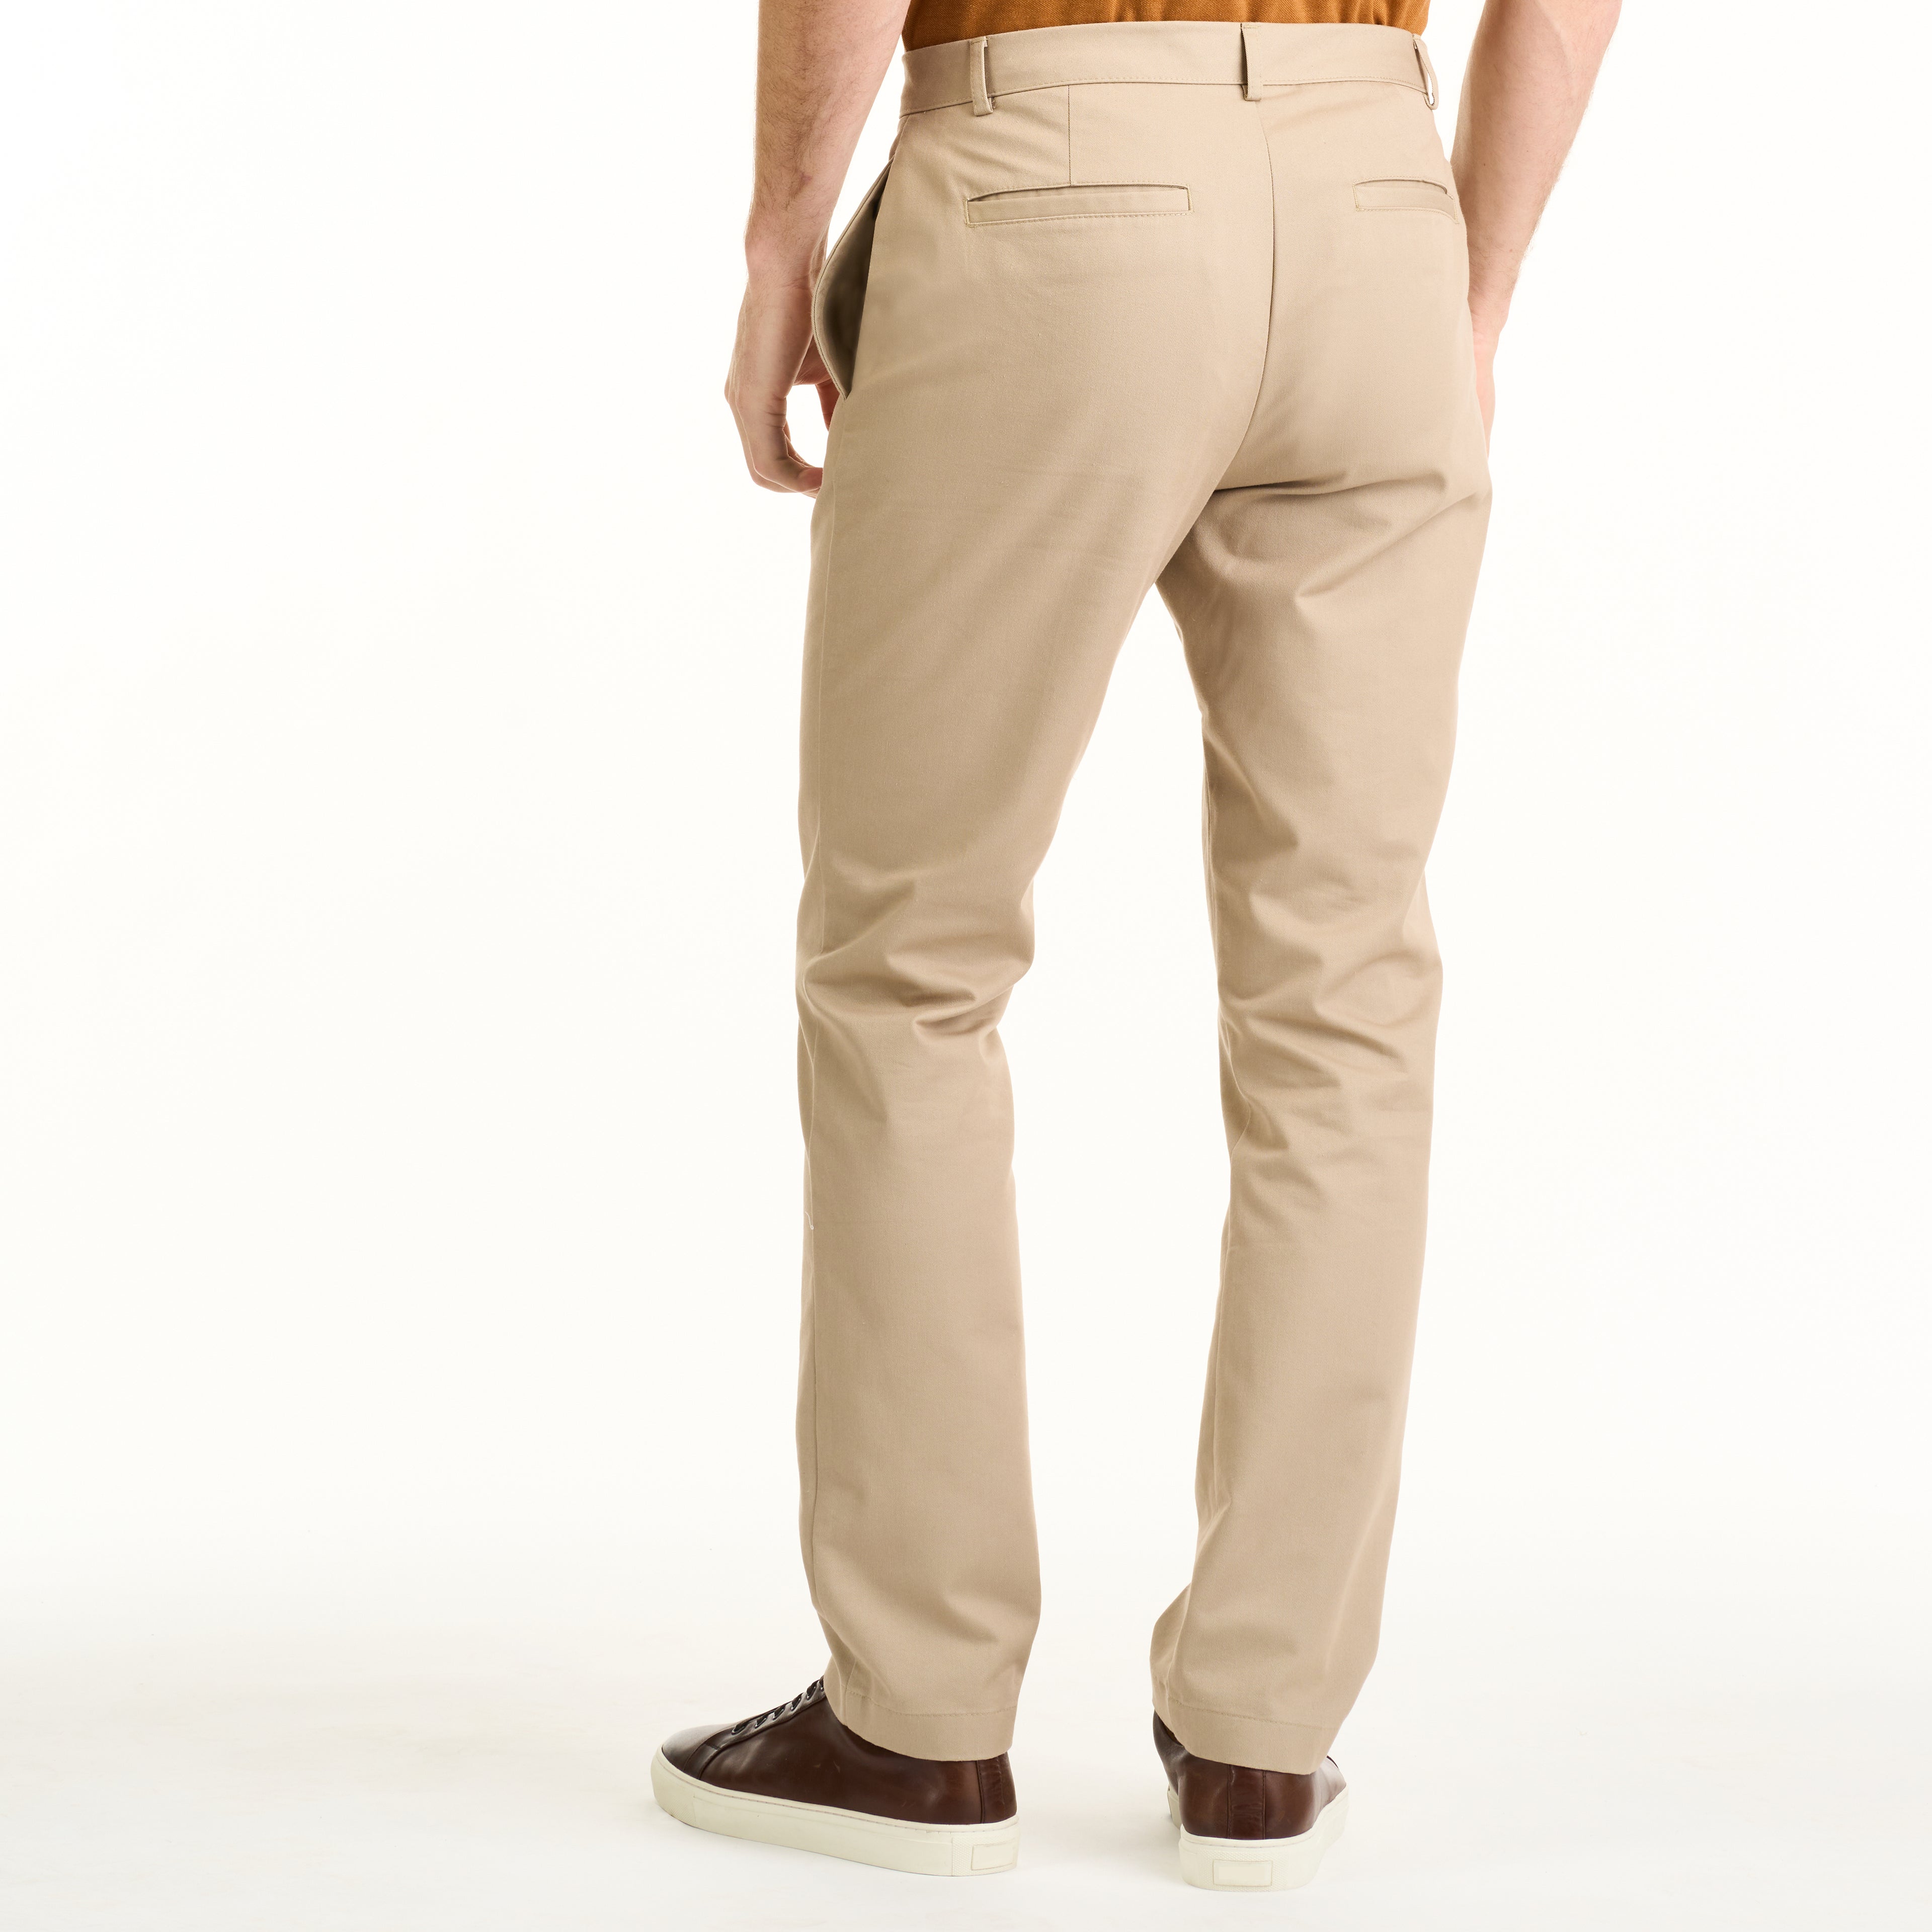 Essential Wrinkle Free Flat Front Straight Leg Pant - Crockery – Van Heusen